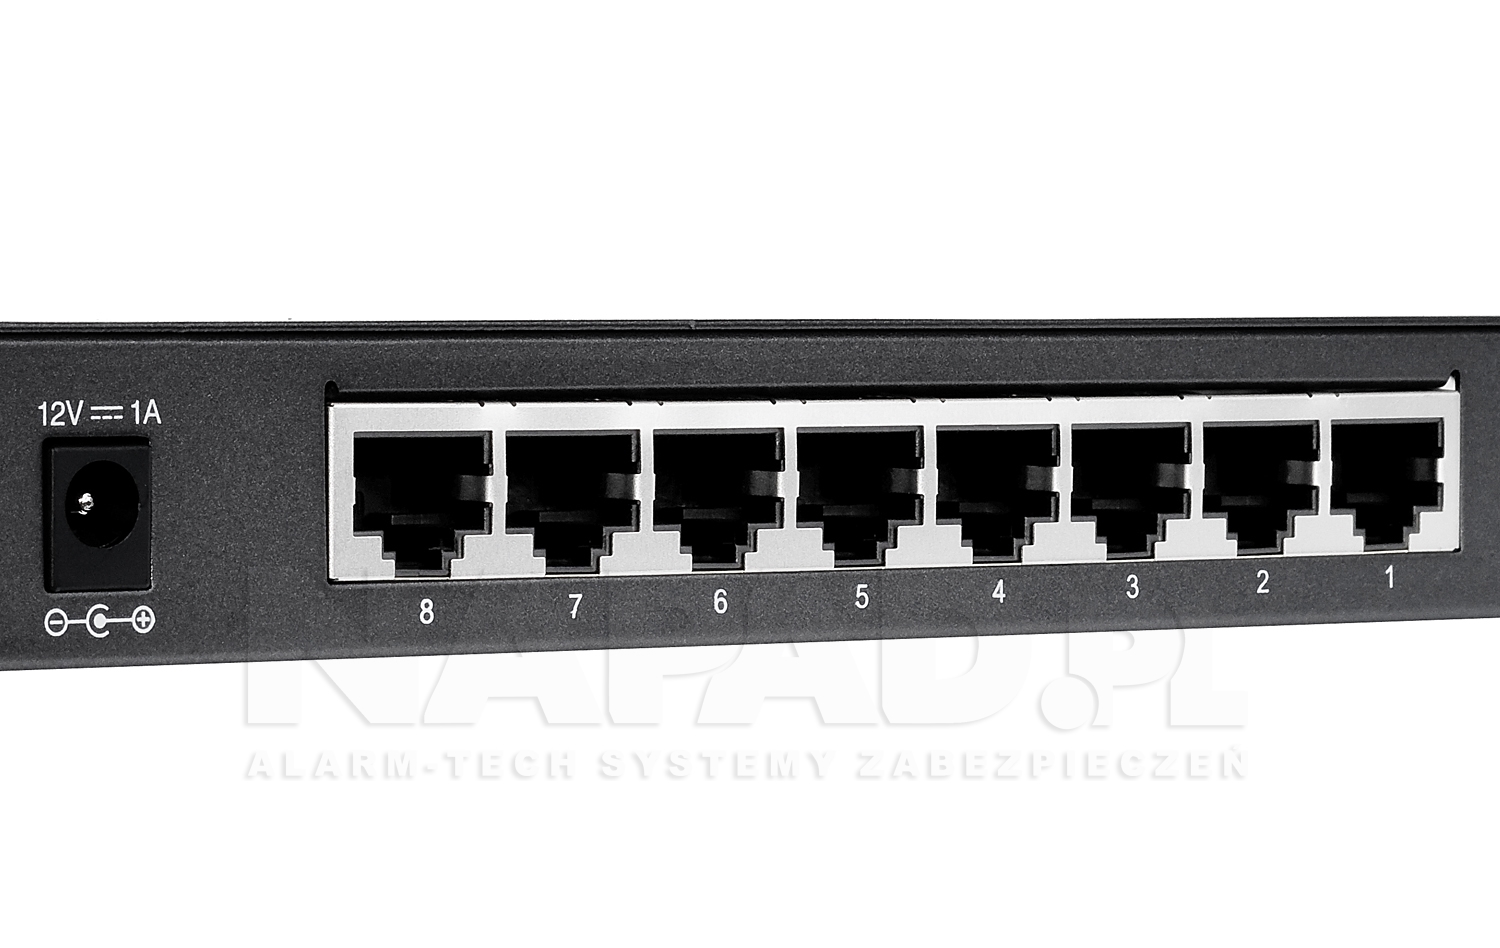 TL-SG2008 - Porty Ethernet w przełączniku.